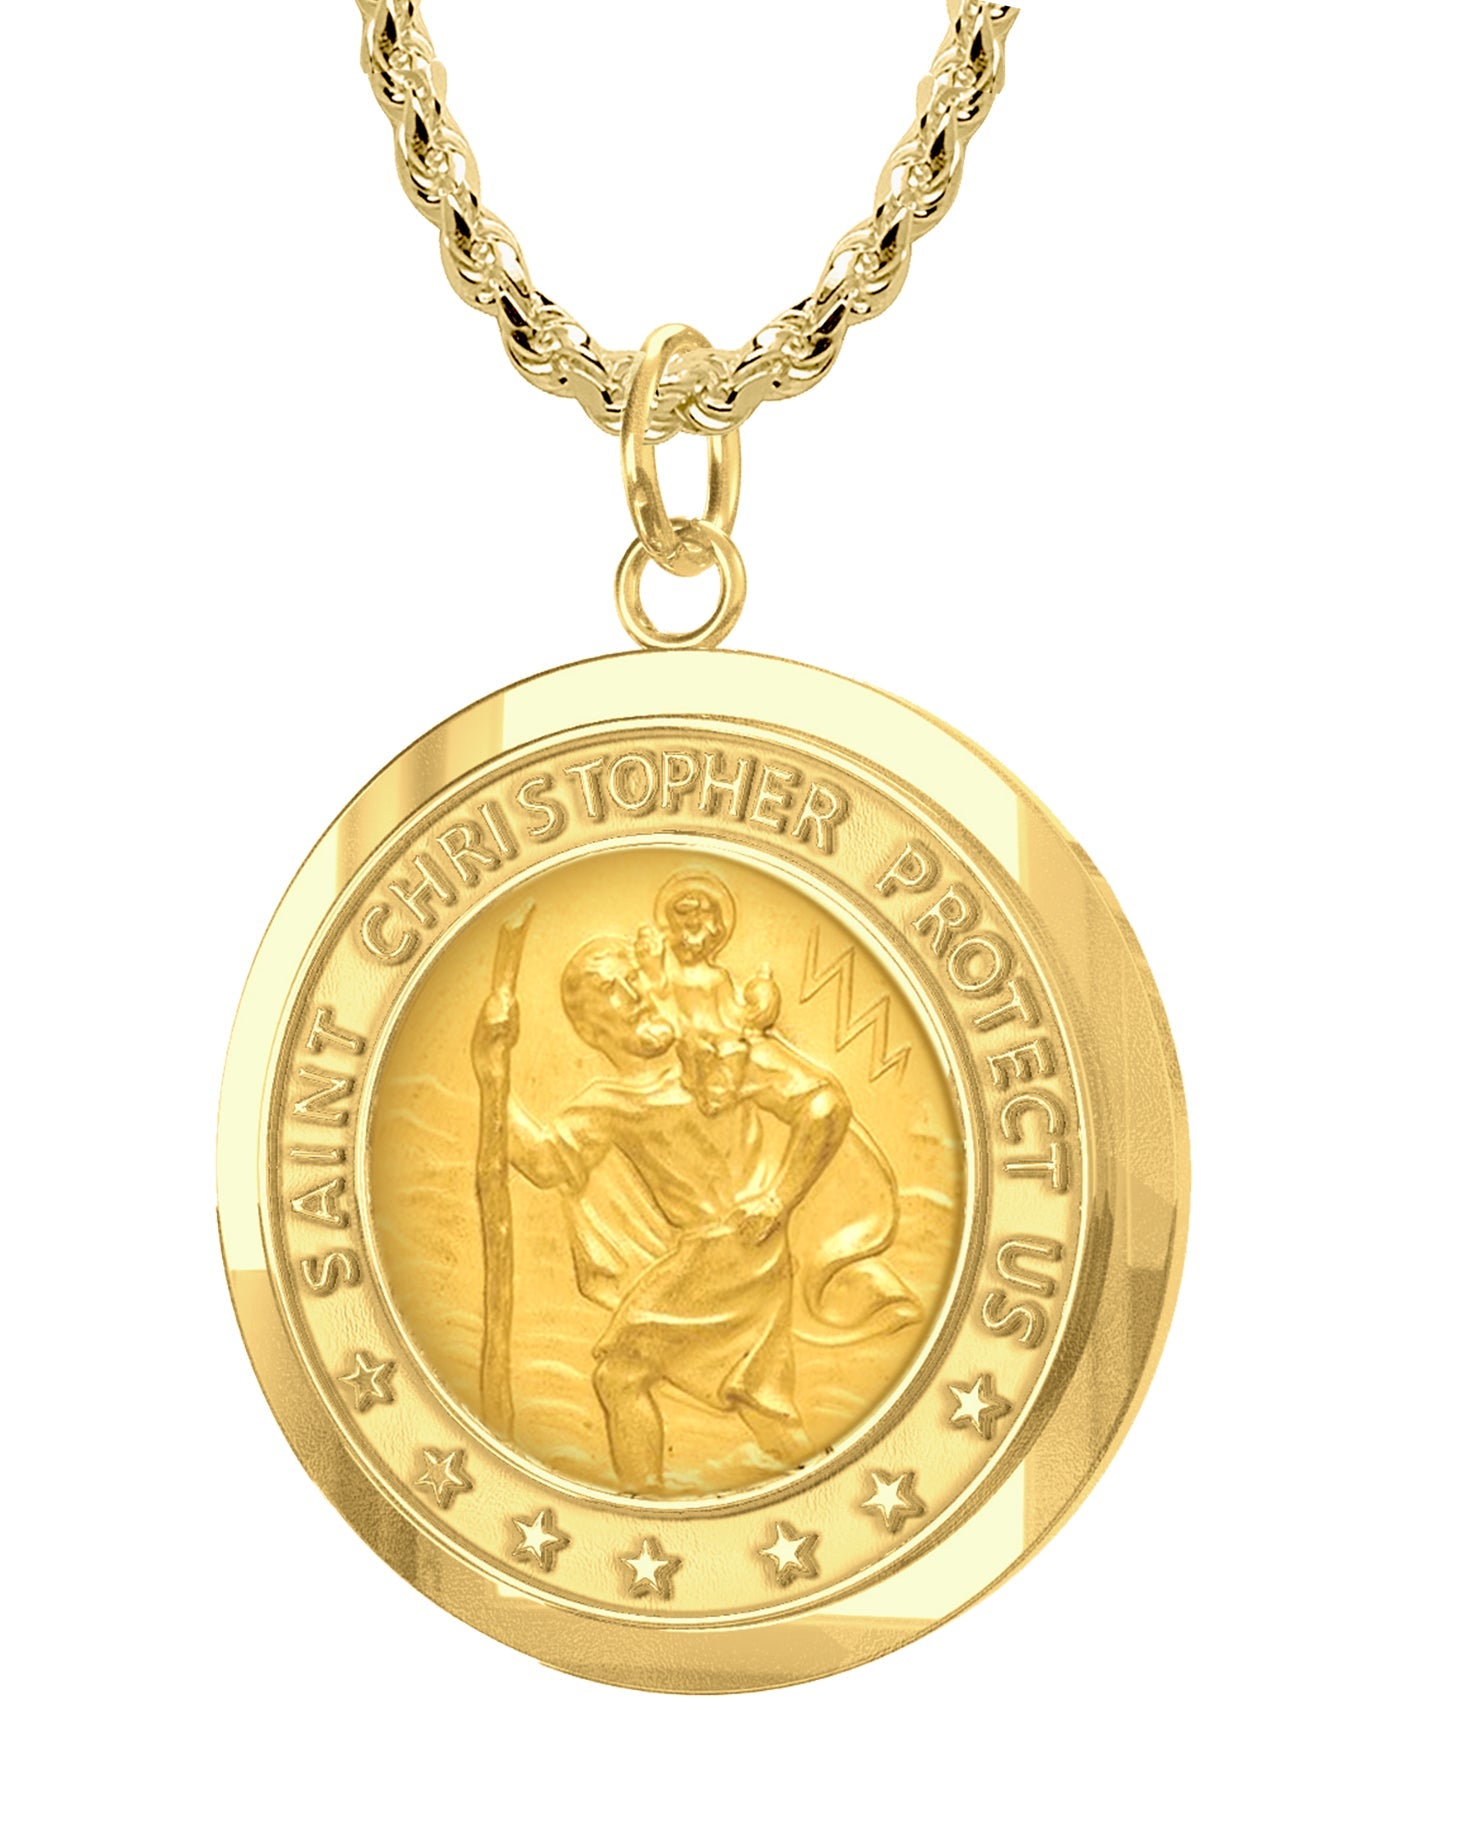 14k White Gold and Satin St. Christopher Medal Pendant レディースアクセサリー